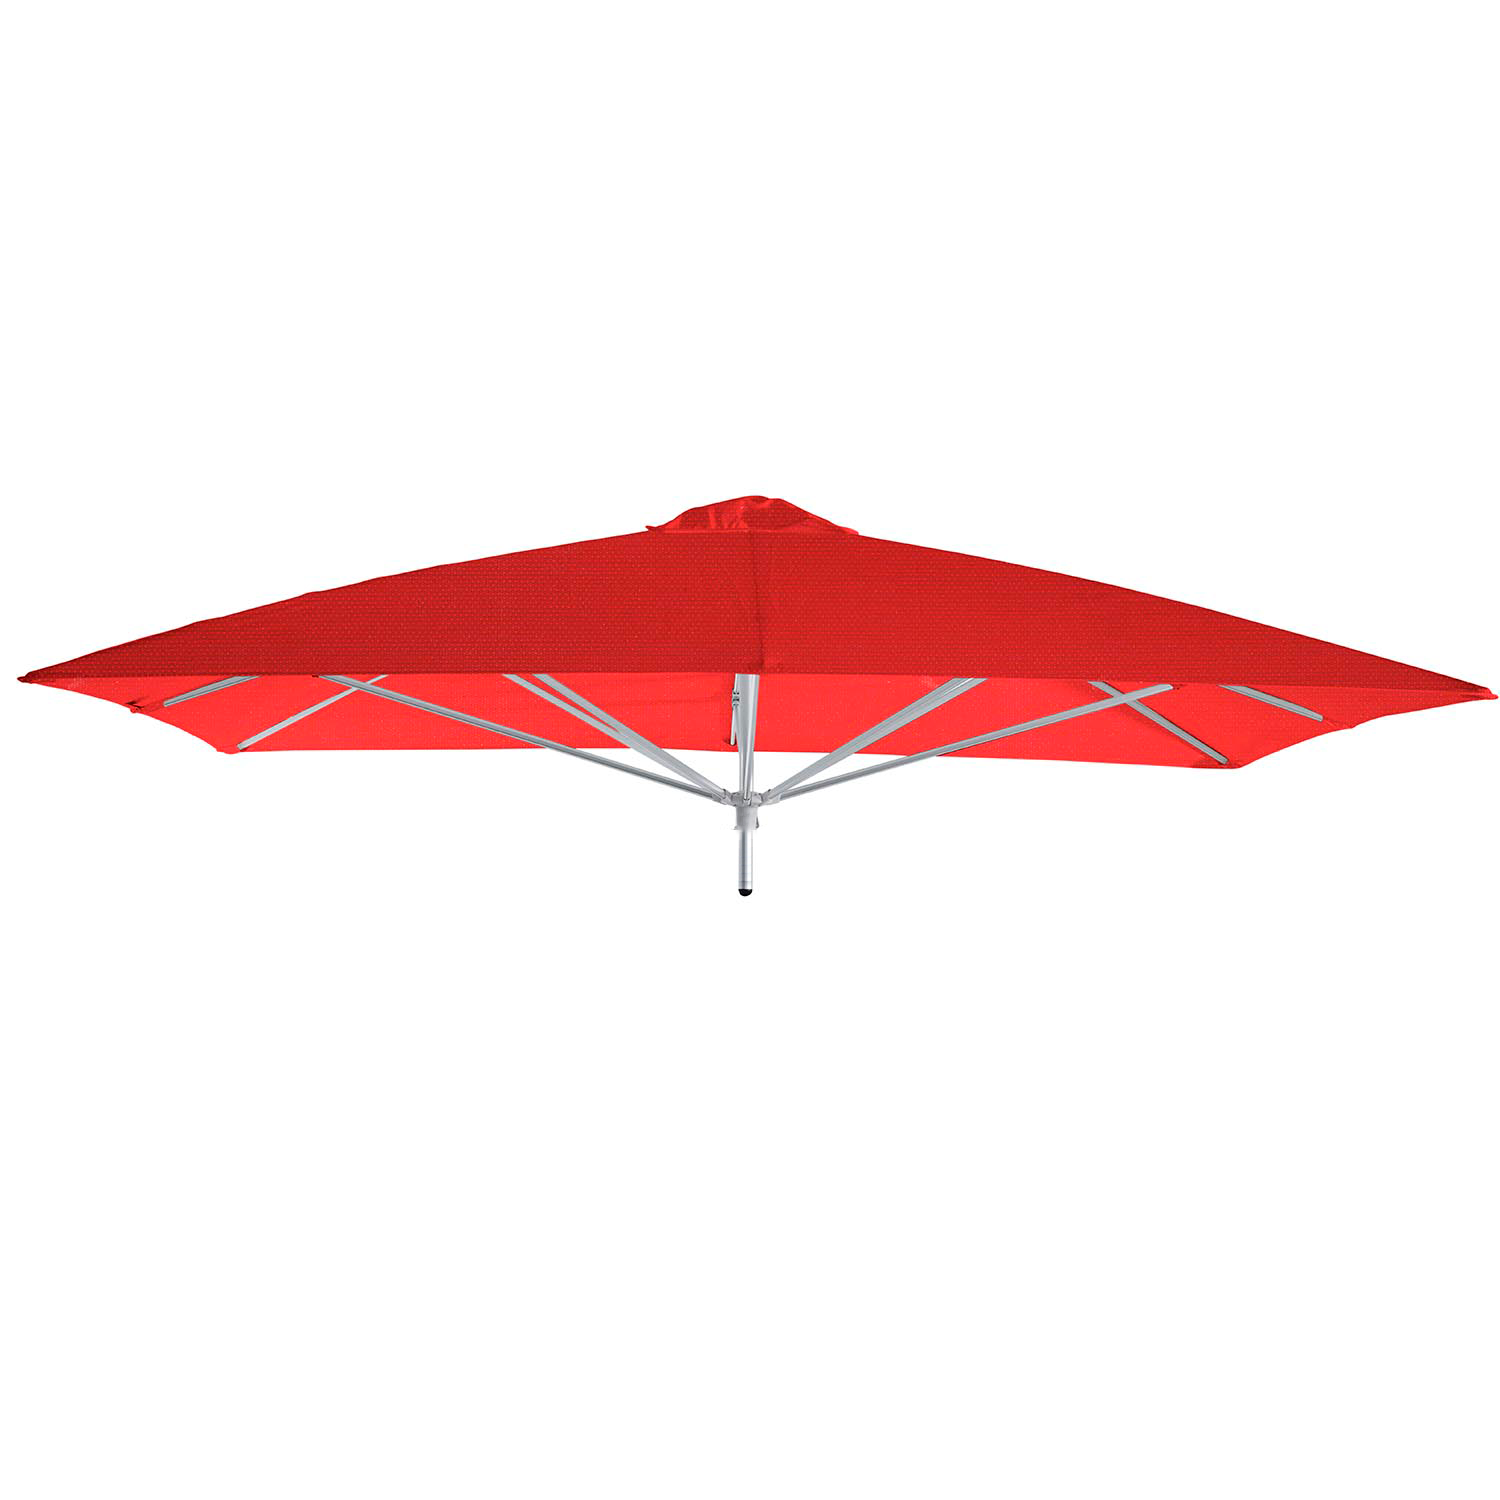 Paraflex Classic parasolkap 190x190cm - Sunbrella (Pepper) 